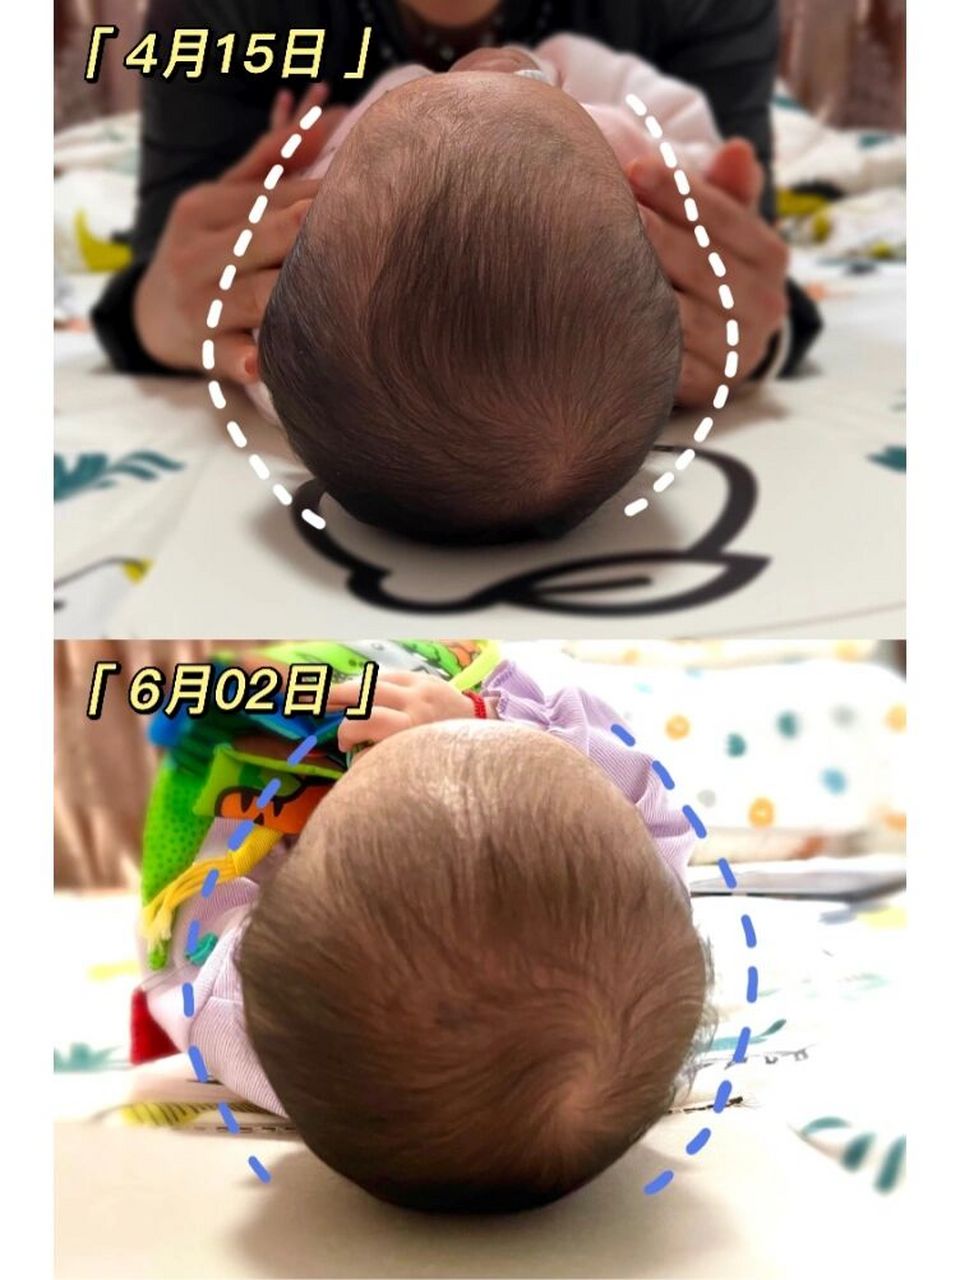 婴儿菱形头型图片图片